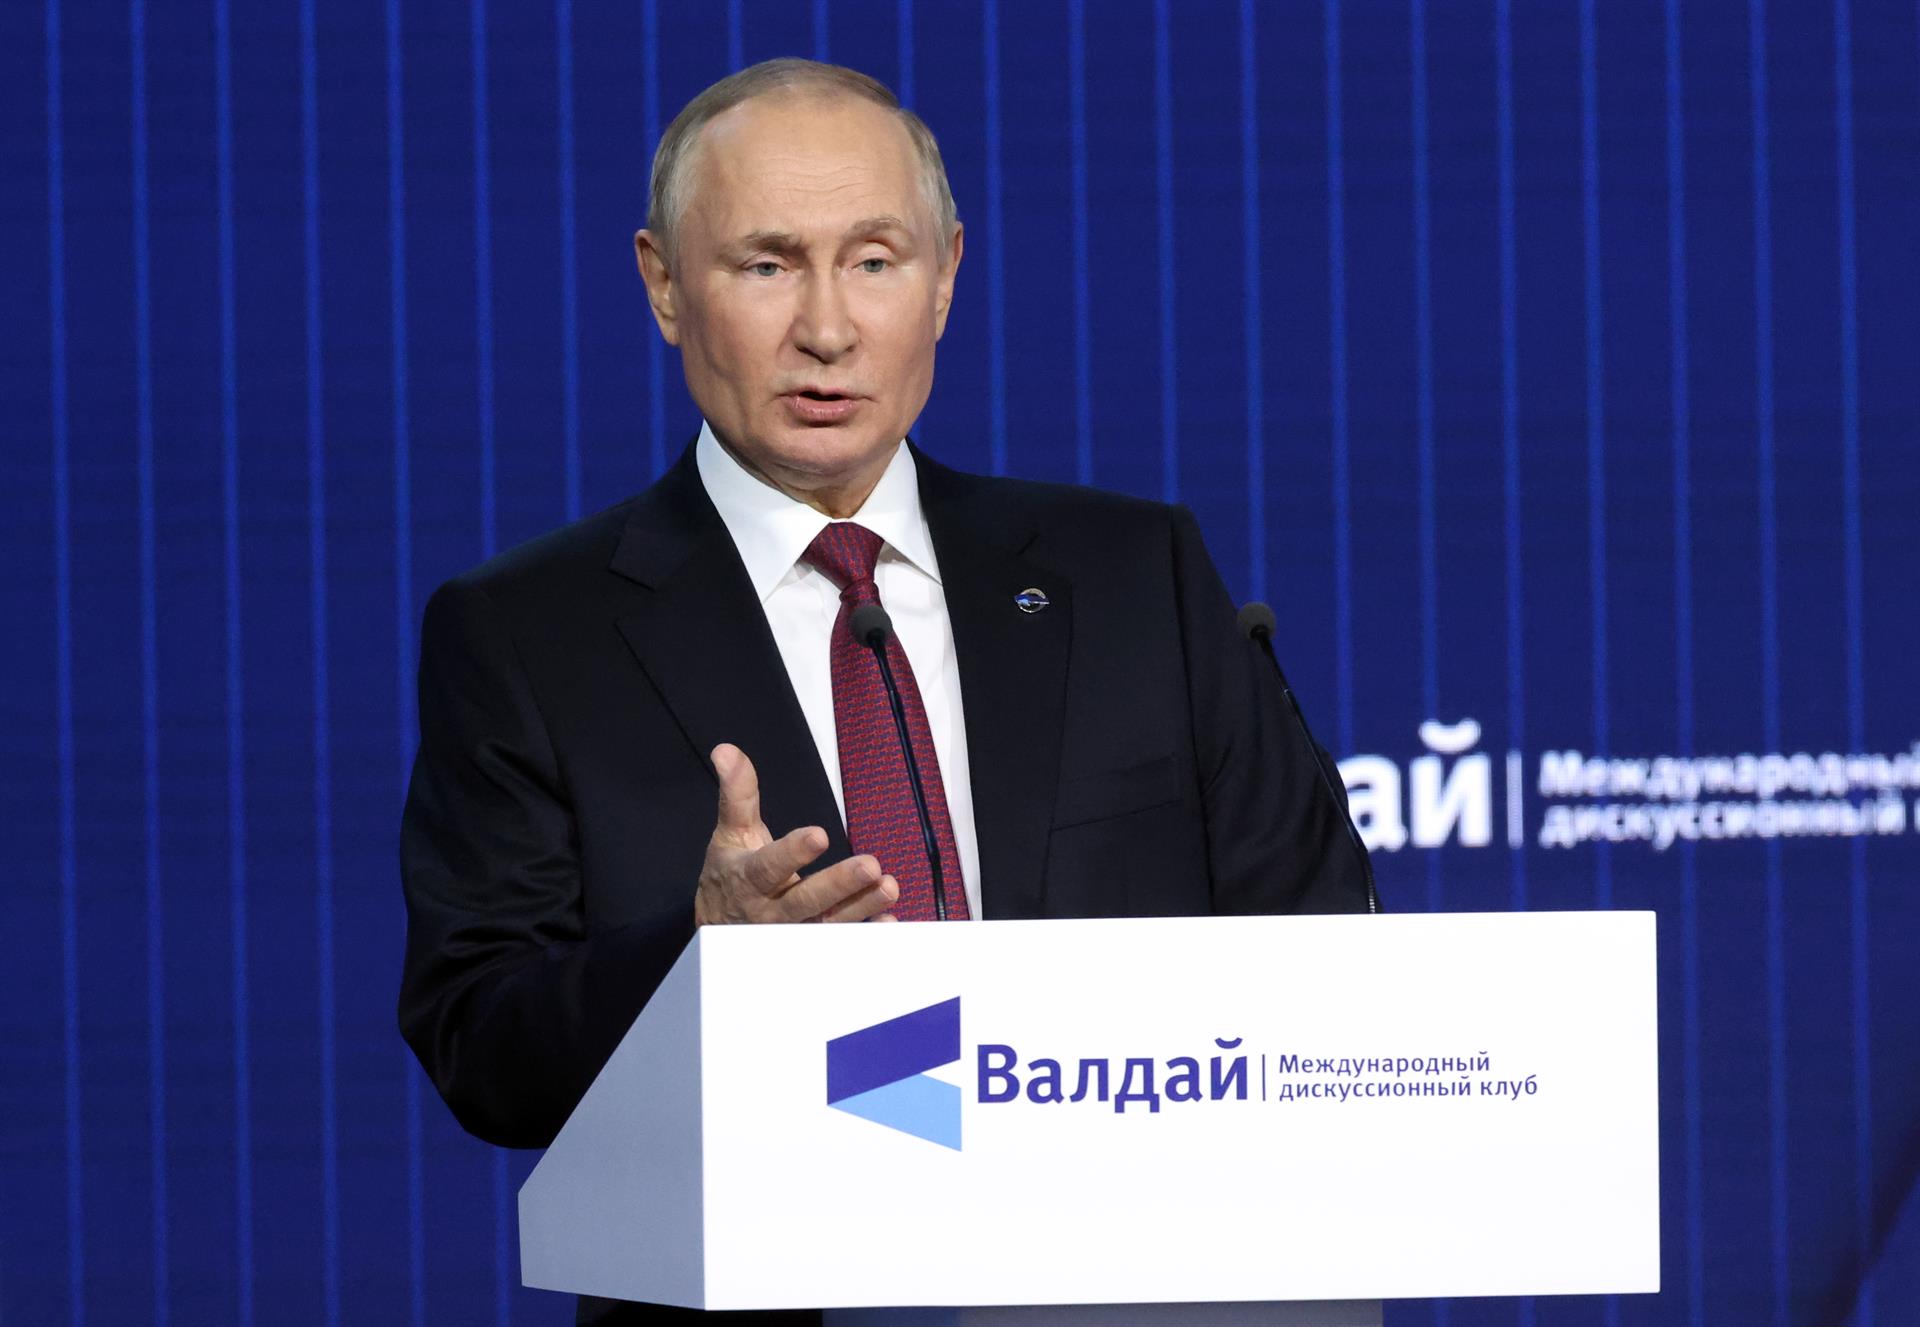 Vladímir Putin avisa: "Al mundo le espera el decenio más peligroso desde la Segunda Guerra Mundial"